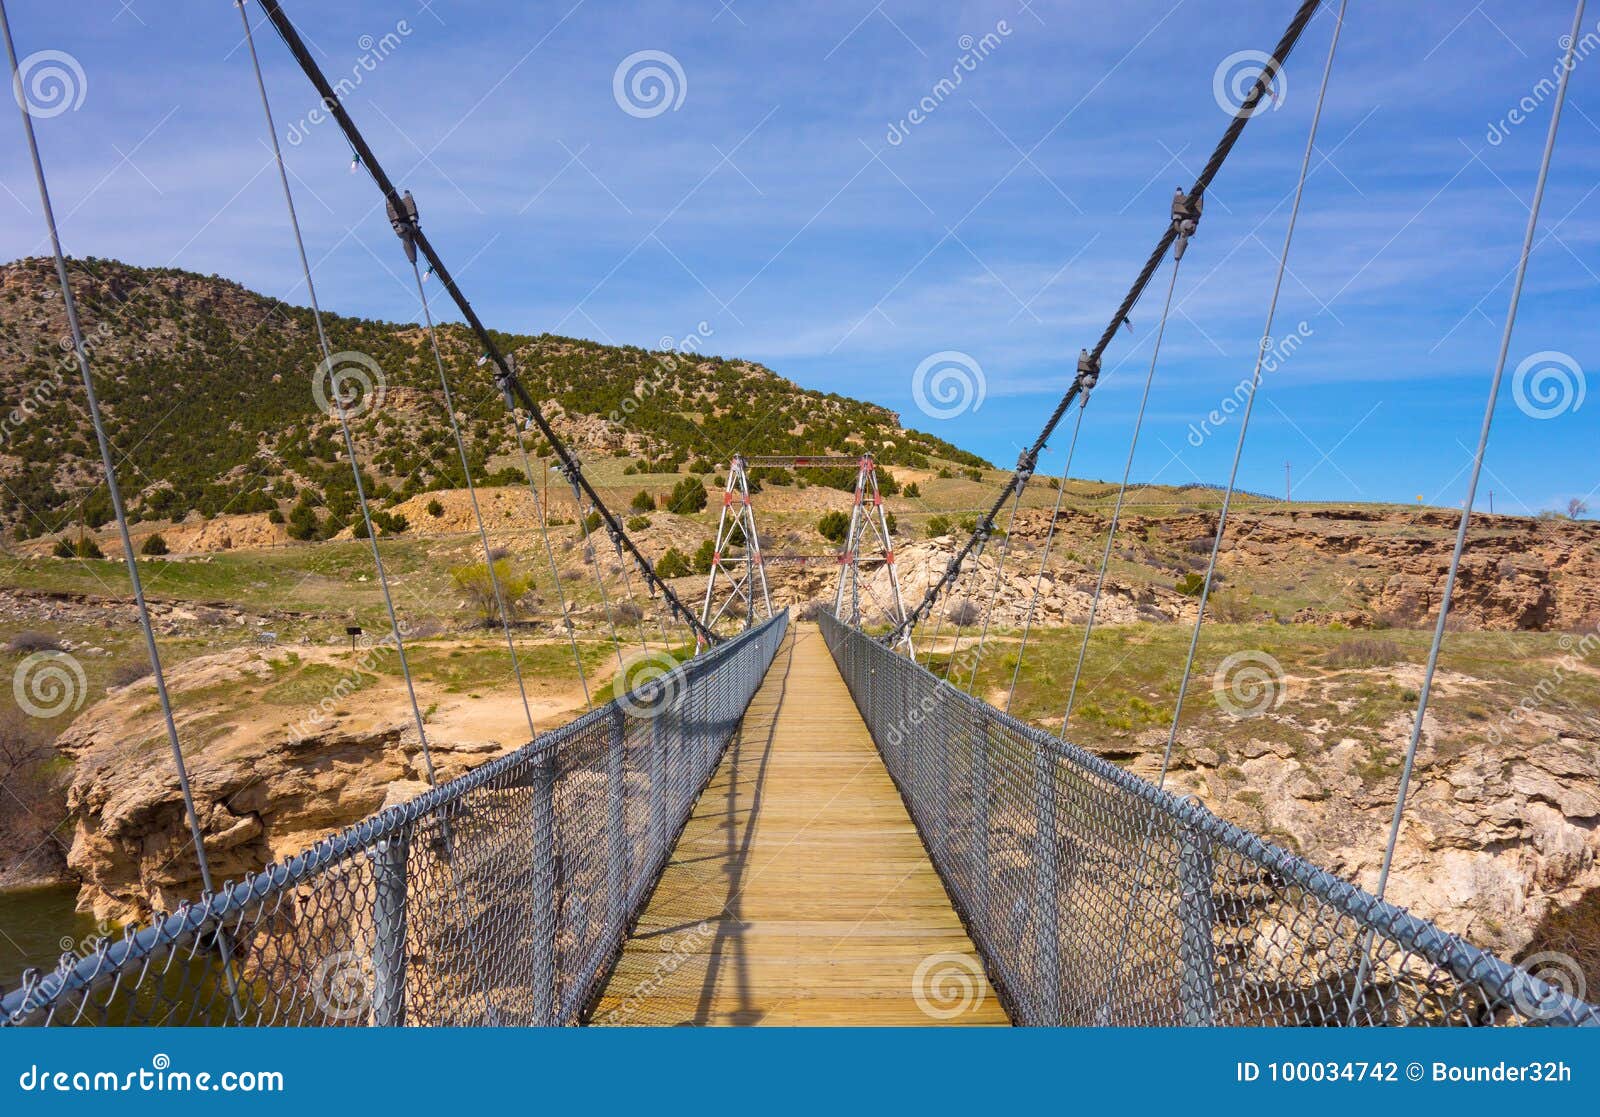 Een hangbrug in Wyoming. Een lange brug zoals die bij beroemde thermopolis wordt gezien de hete lentes